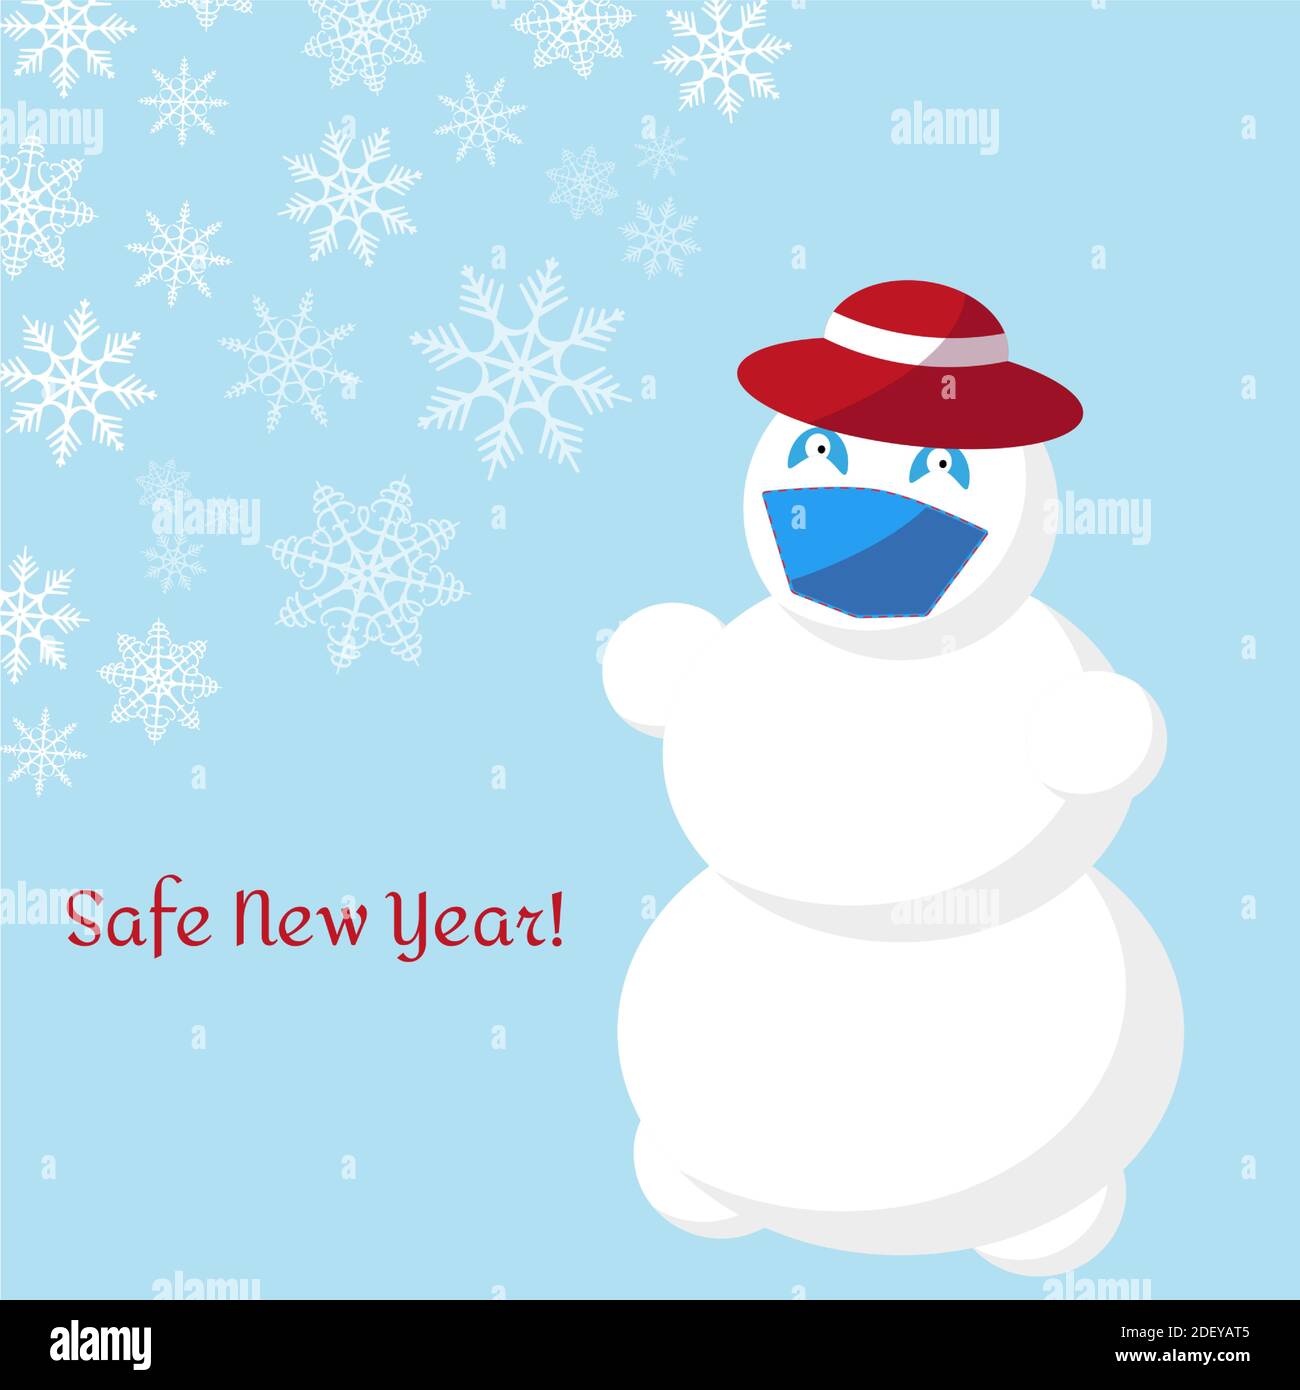 Snowman in un cappello rosso e una maschera medica viso su uno sfondo blu con fiocchi di neve e l'iscrizione - sicuro anno nuovo. Concetto Natale vacanze duri Illustrazione Vettoriale